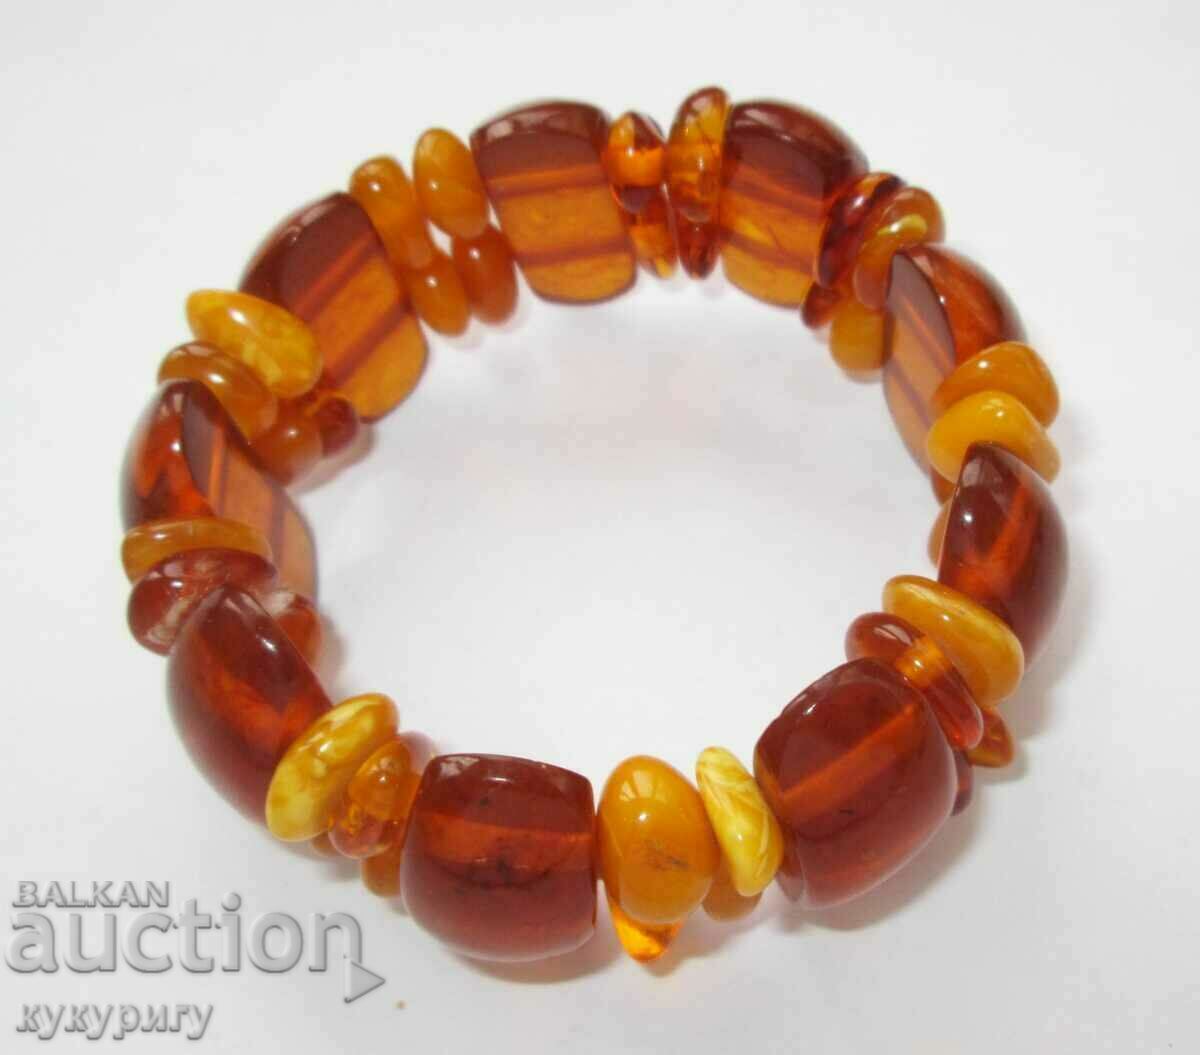 Women's Sots bracelet made of natural natural amber